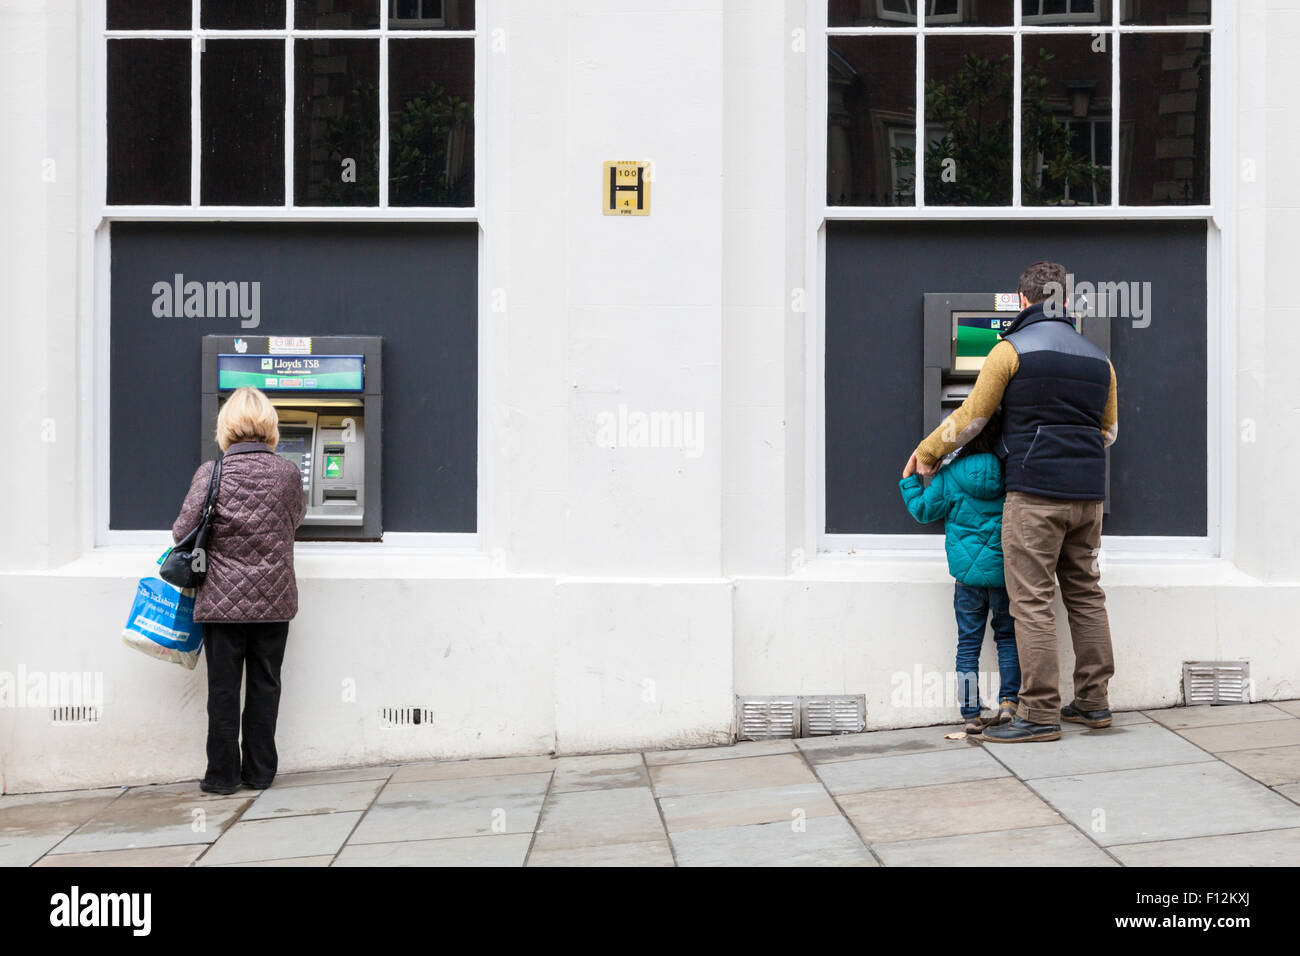 Persone presso la Lloyds TSB Bank bancomat (ATM), Nottingham, Inghilterra, Regno Unito Foto Stock